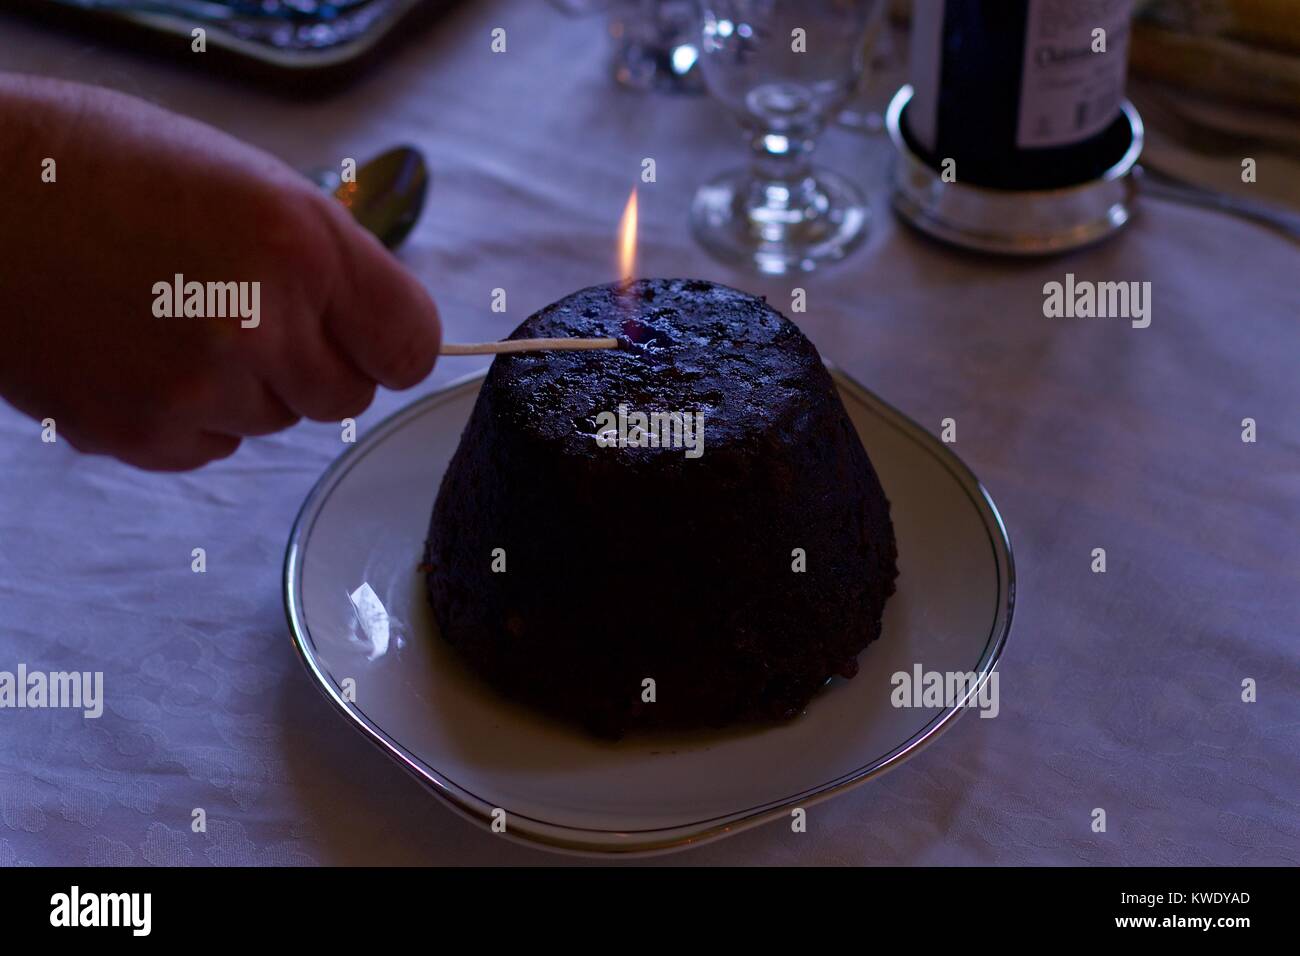 Man's hand lighting christmas pudding Stock Photo